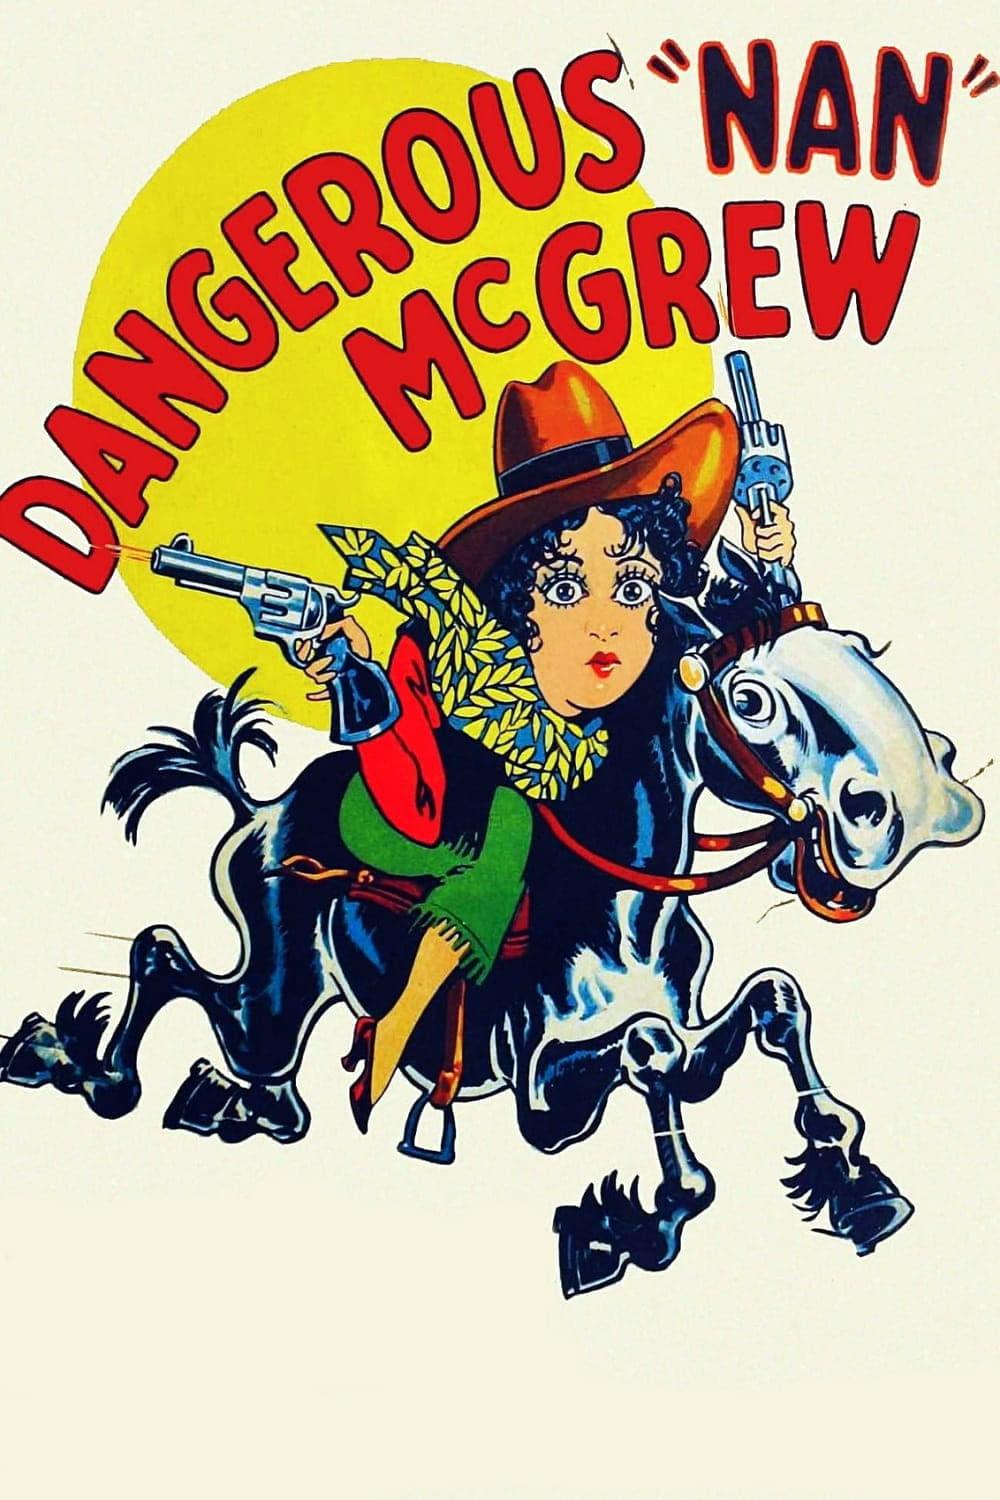 Dangerous Nan McGrew poster